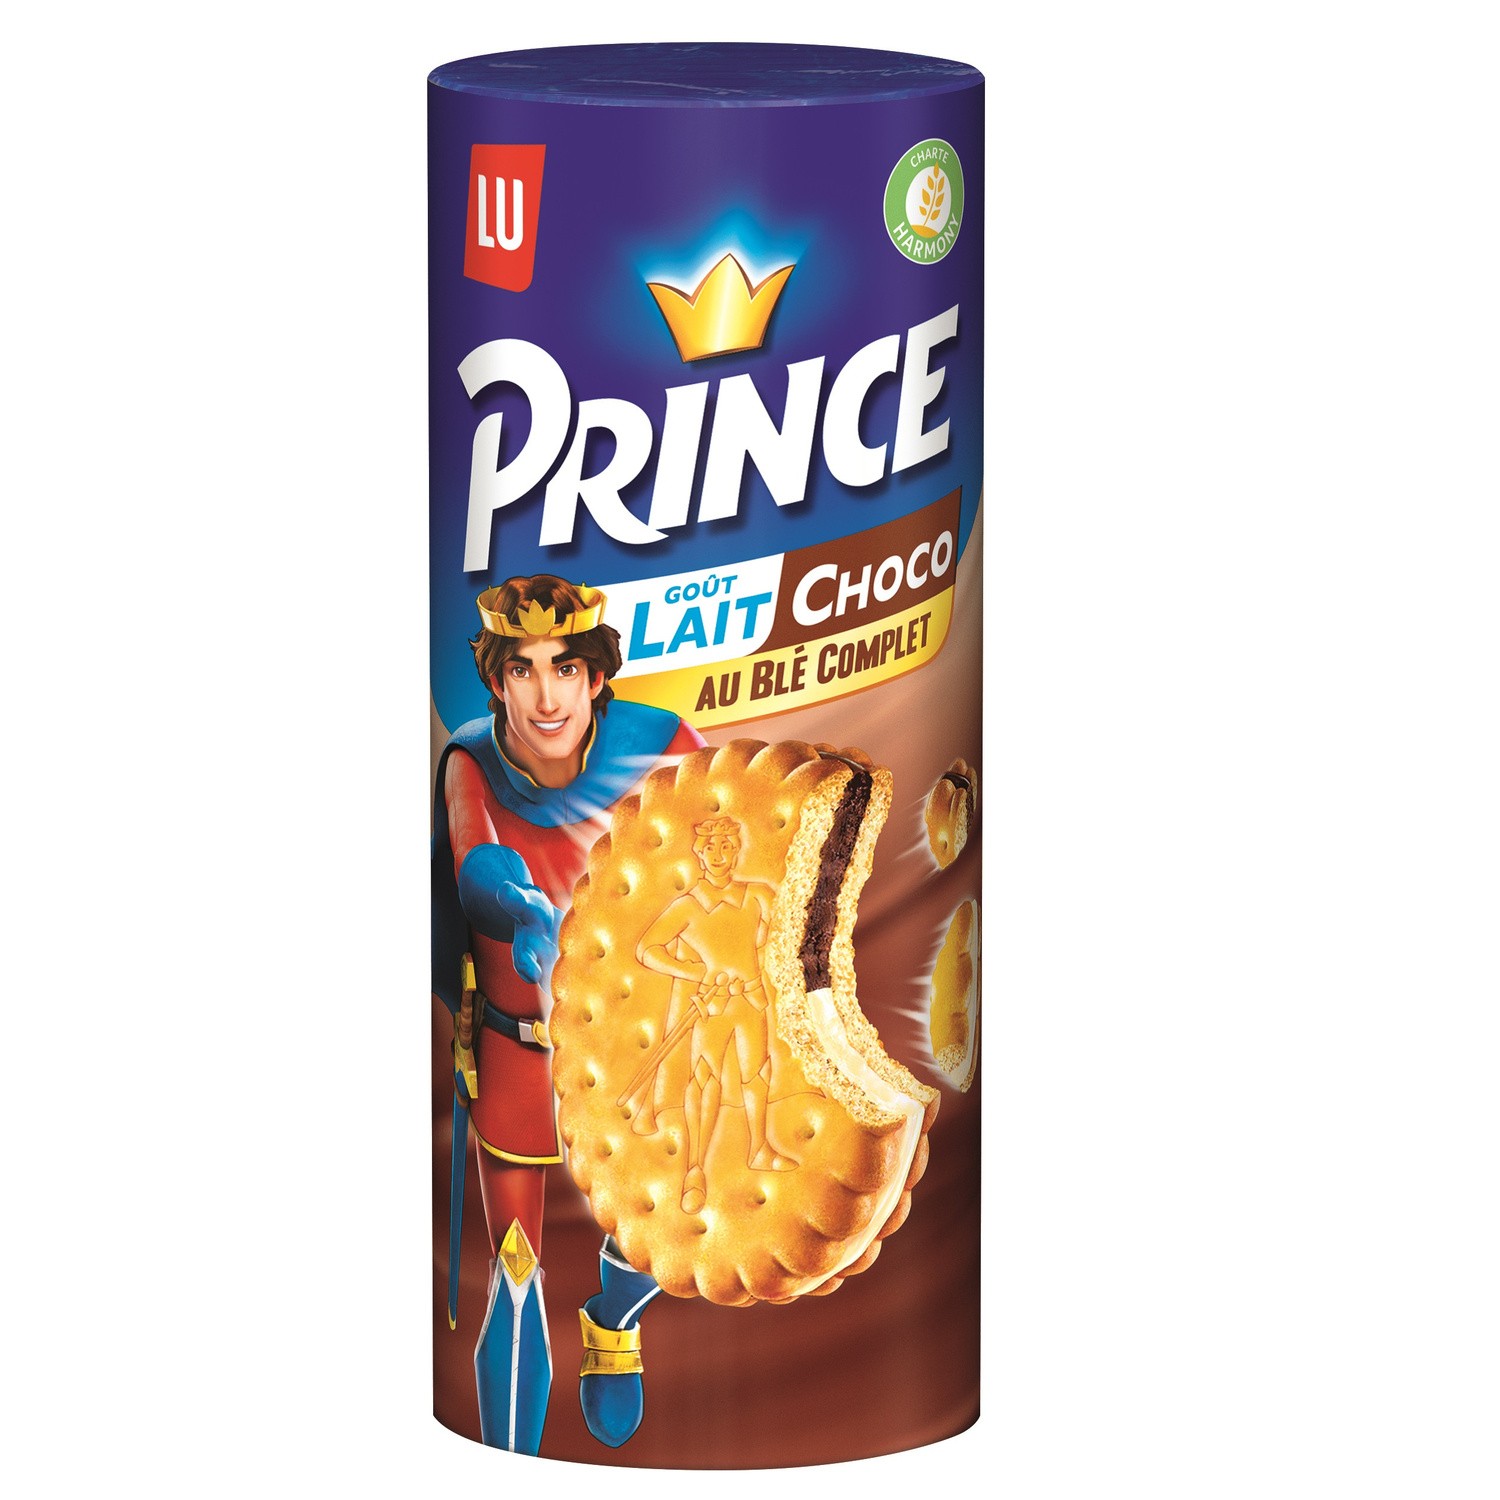 PRINCE goût Lait + Choco au blé complet